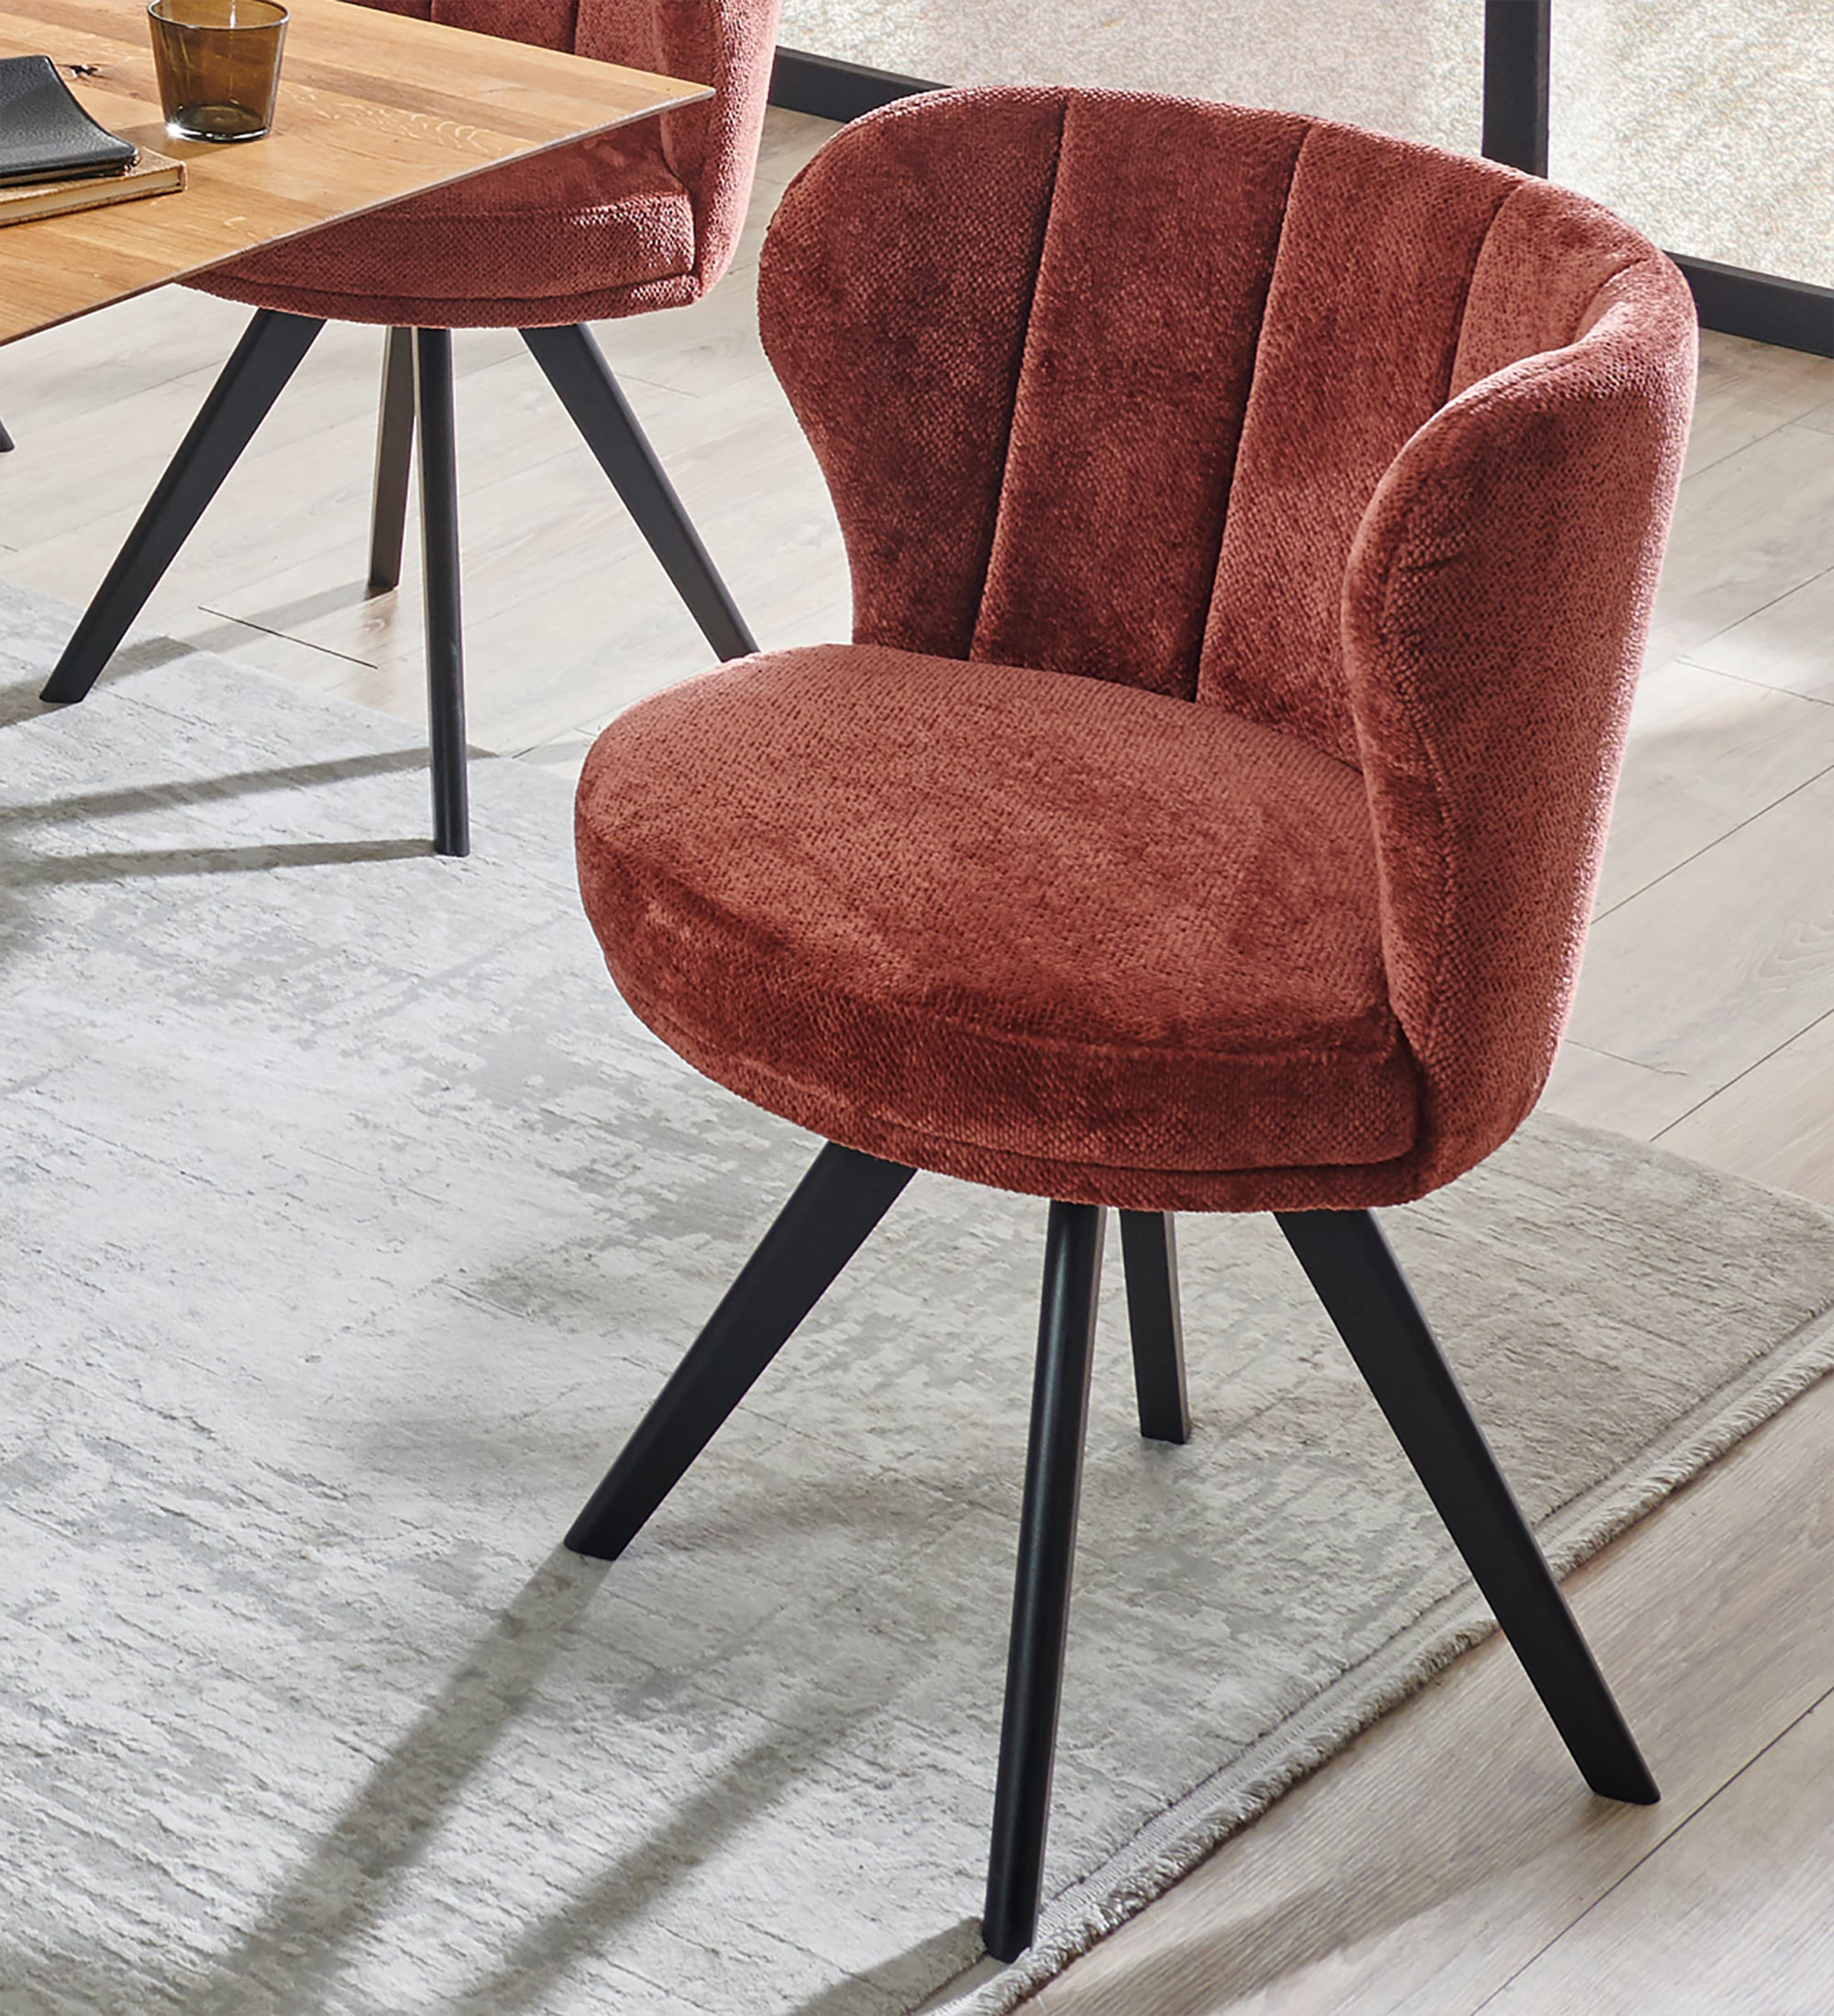 Standard Furniture Saragossa runder Stuhl mit Lehne und Ohren rostrot drehbar